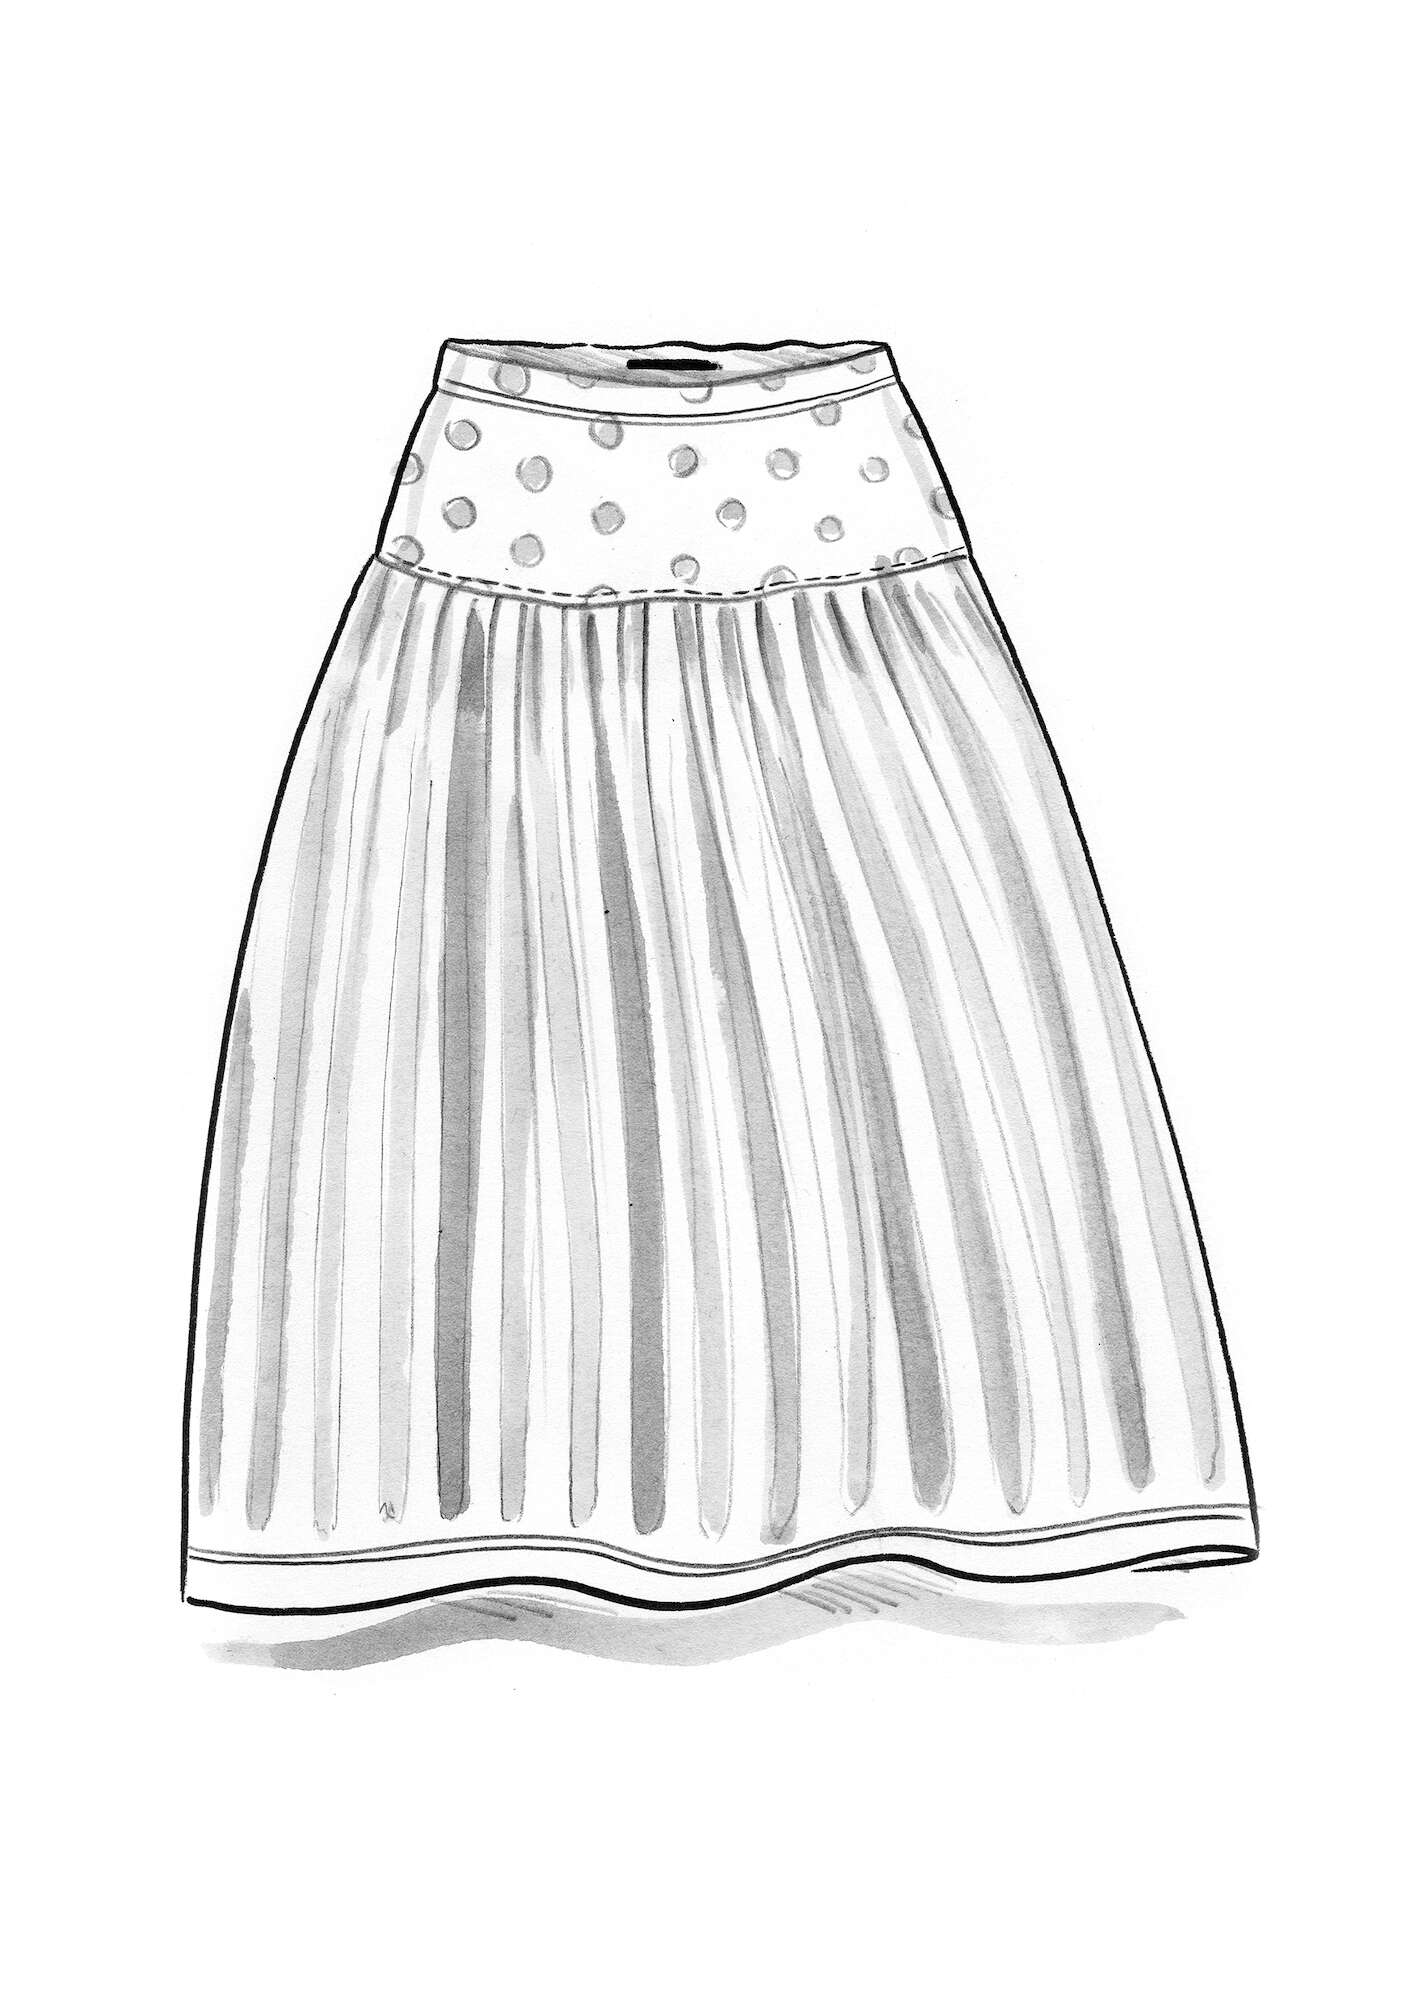 “Siena” skirt in modal graphite